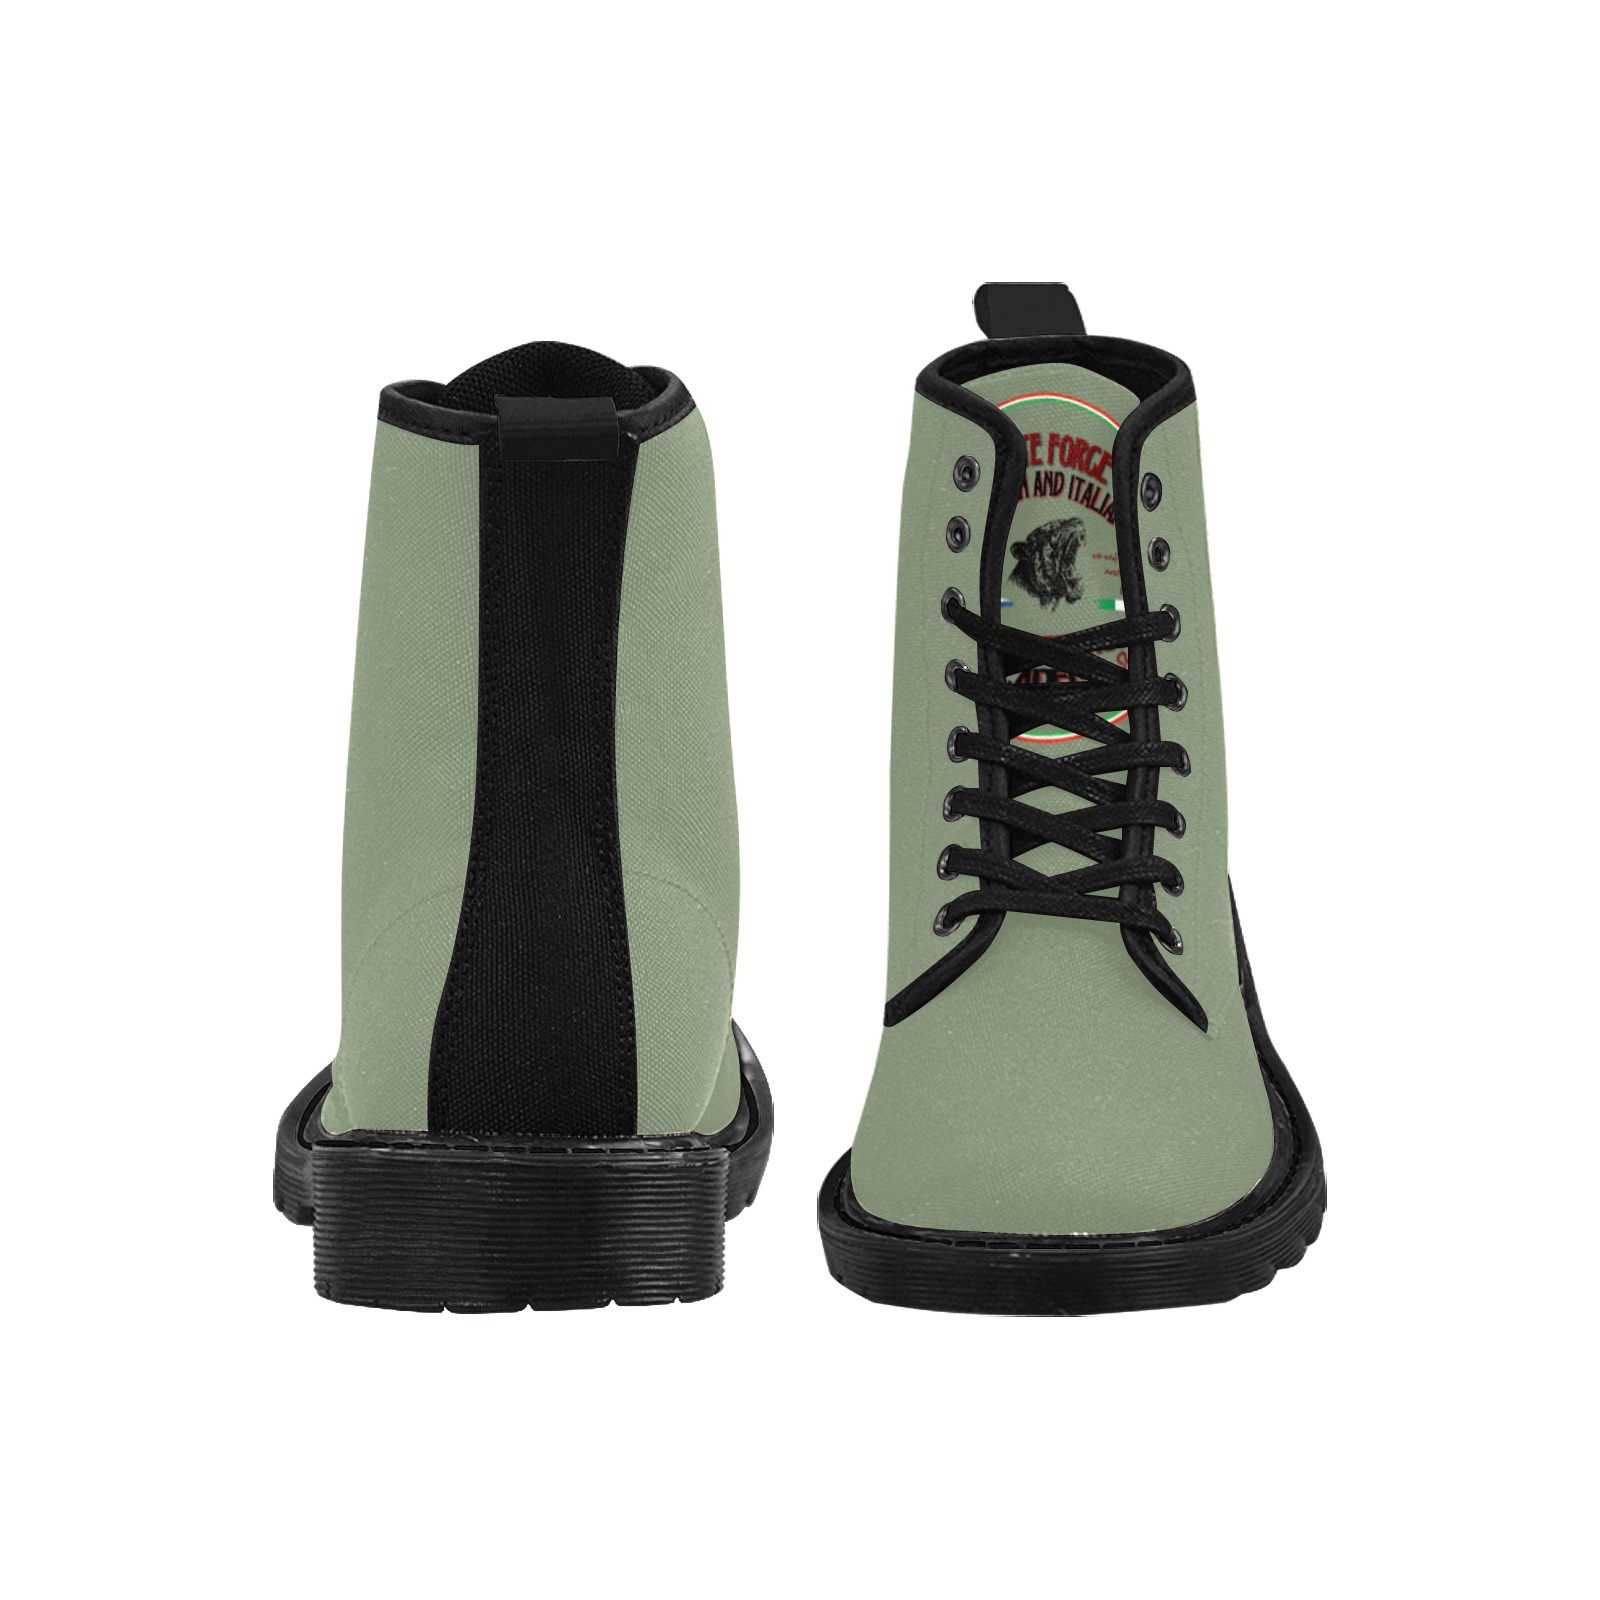 Brute force Martin Boots for Men (Black) (Model 1203H)